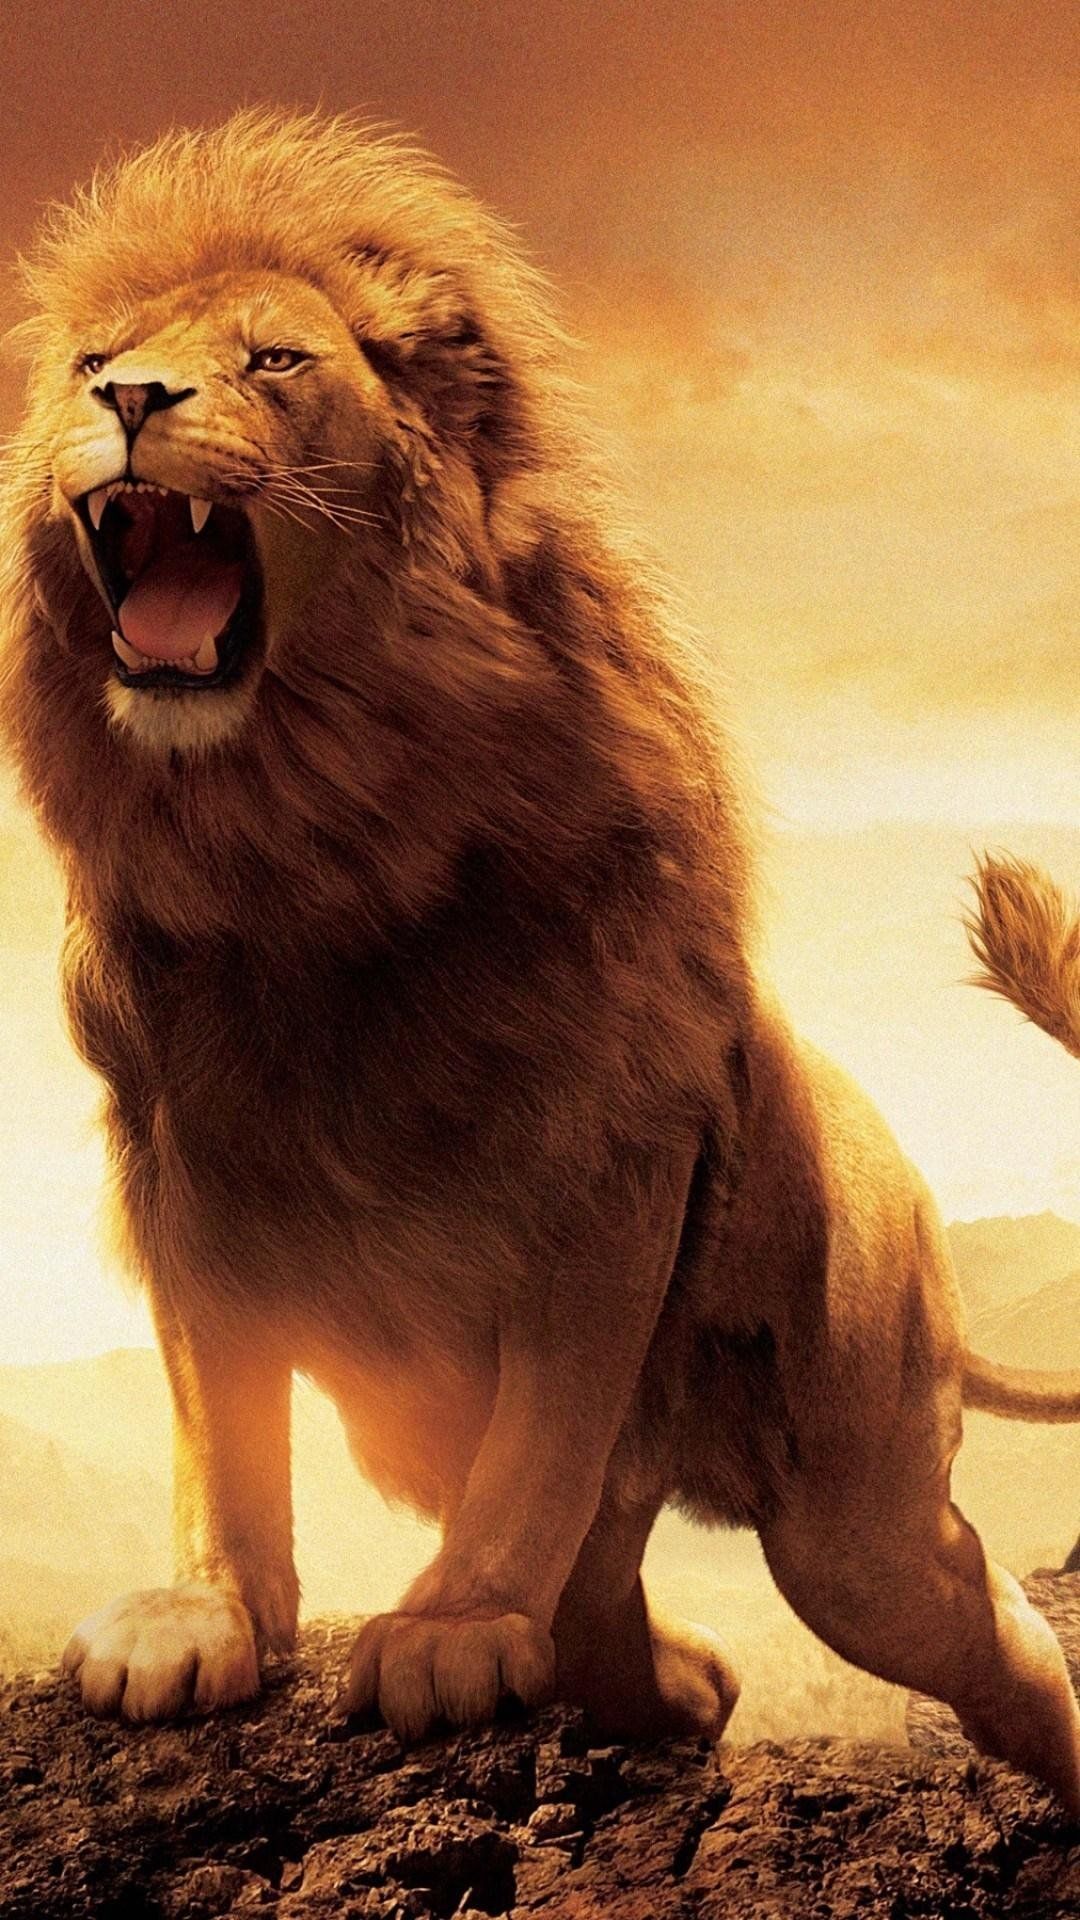 Lion Roaring Wallpaper Free HD Wallpaper